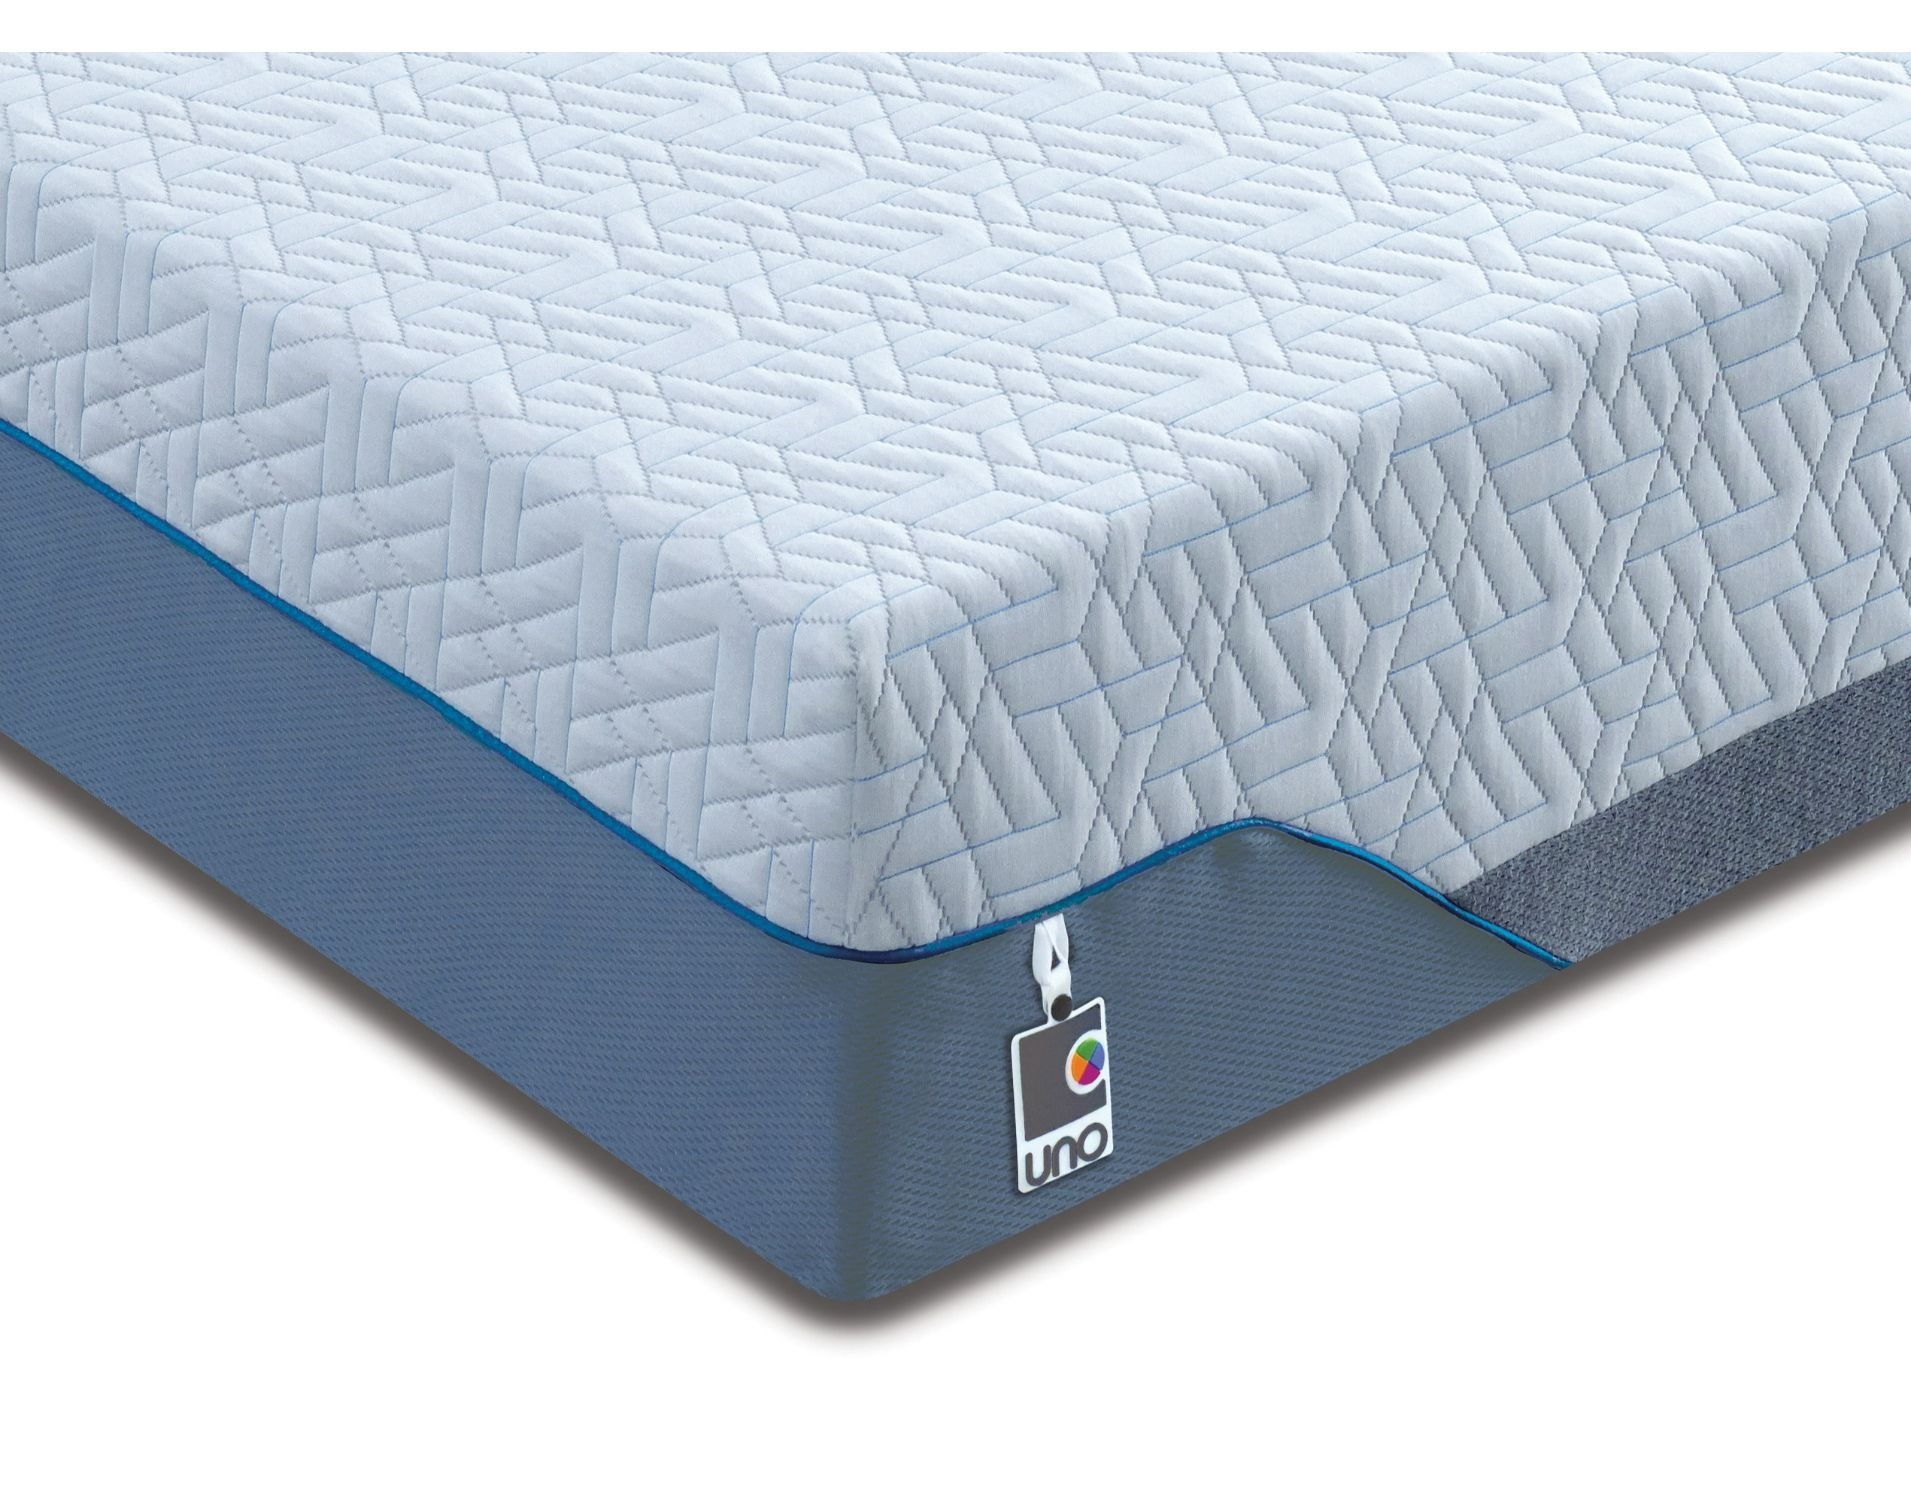 comfort sleep mattress review australia